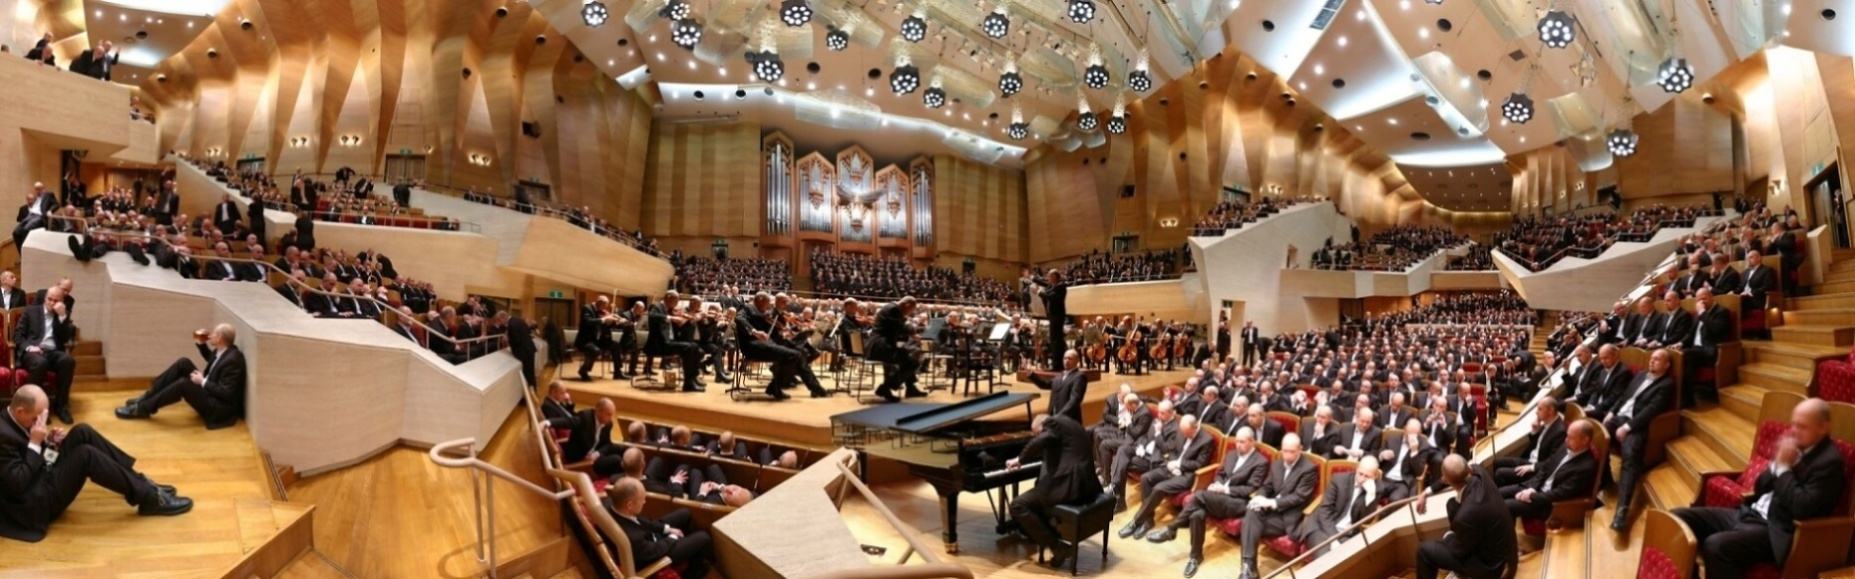 Obrázek Concert hall